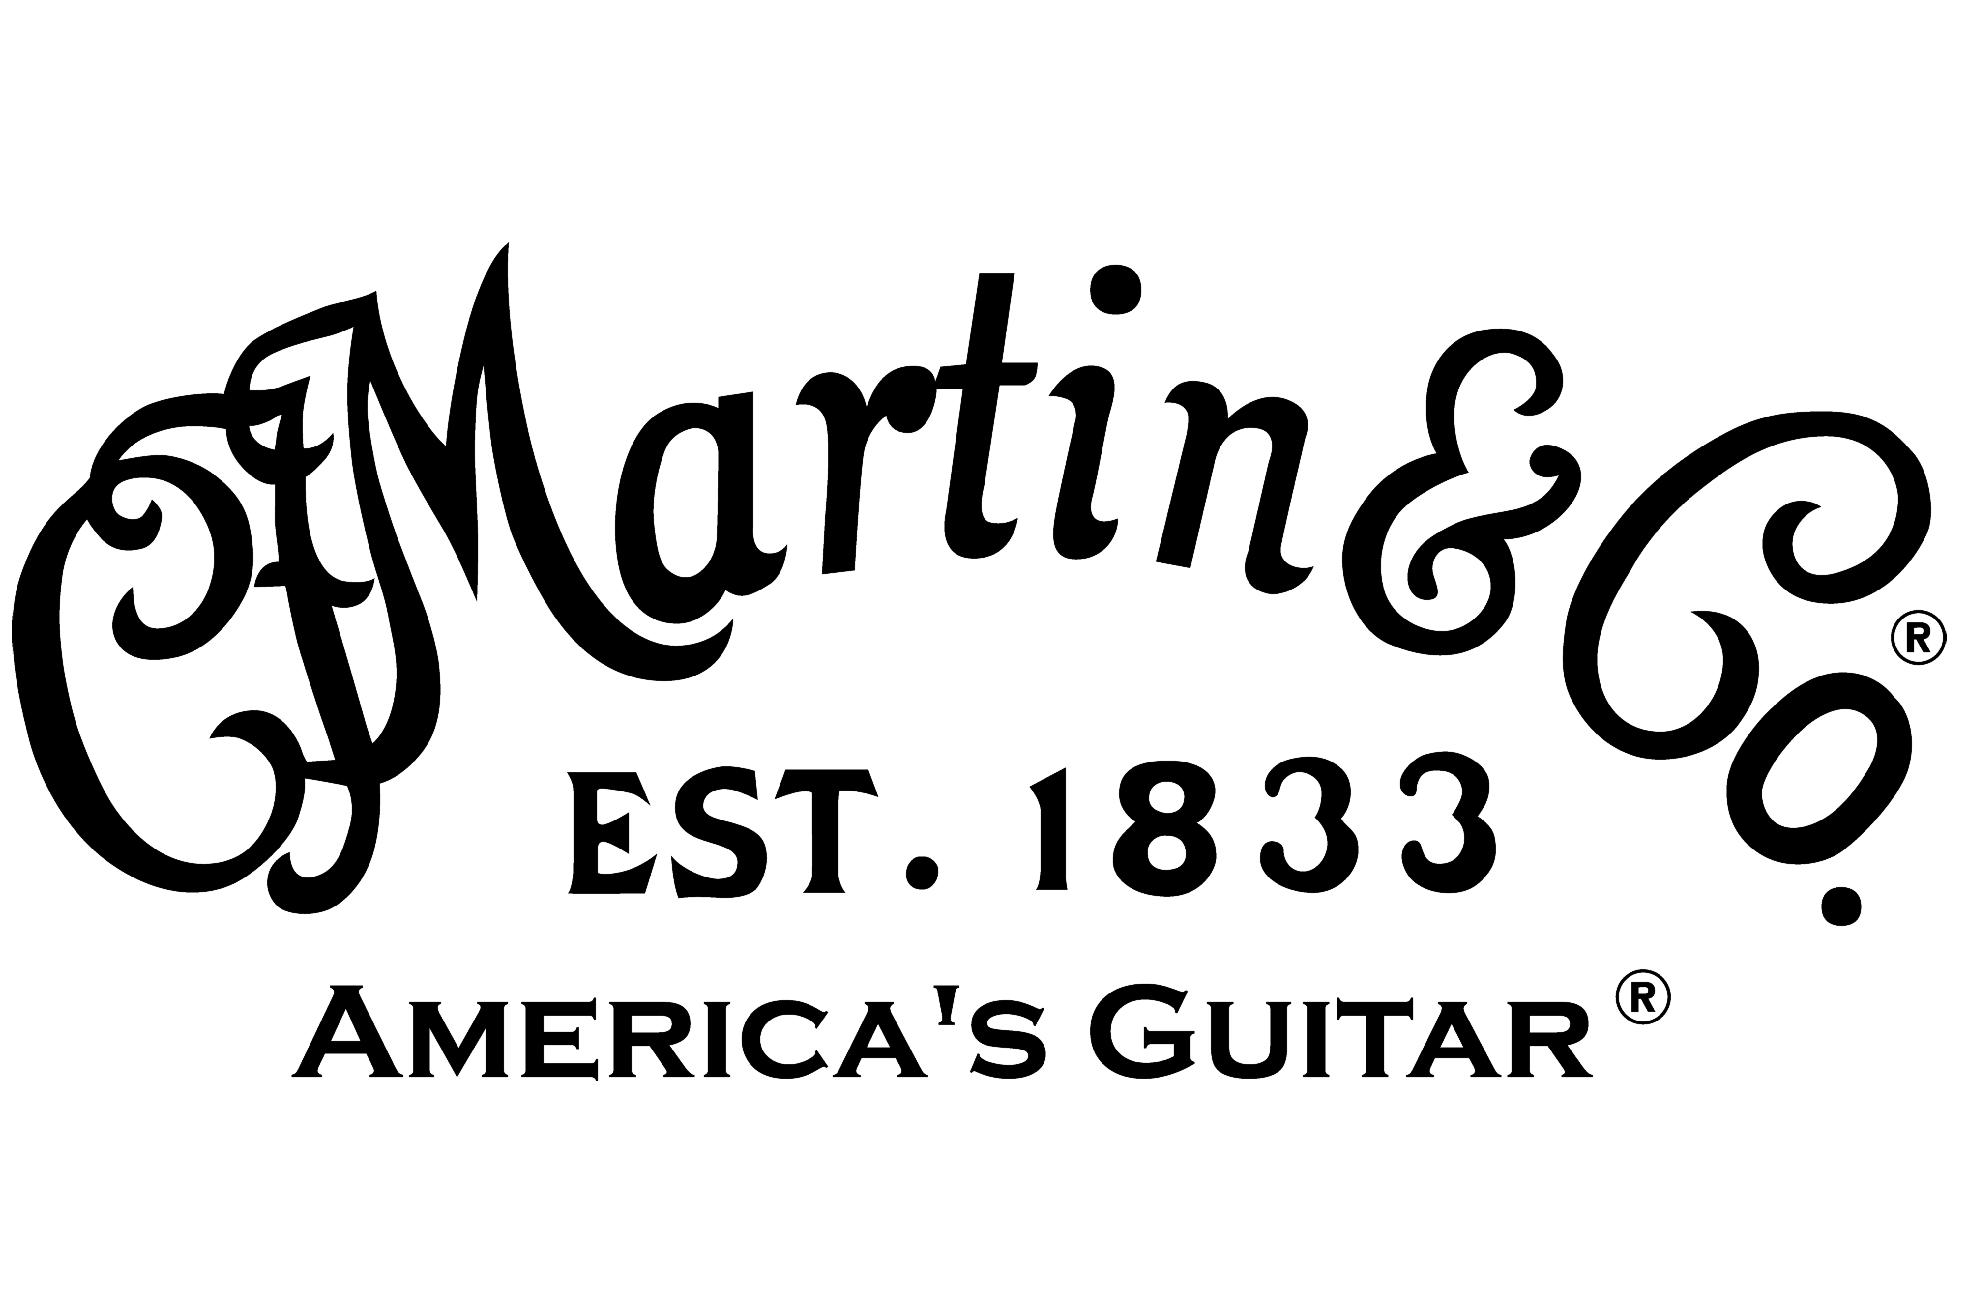 ]]Martinギターの一部商品に関しまして、Martin社の価格改定、各種コストの高騰から価格の改定が発表されました。 今回の値上げはこれまでに類を見ない大幅値上げです。しかも人気品番はなかなか国内在庫が安定しておりません。 Martinギターが気になっていた方は、今がチャンスです。 こちらのペー […]